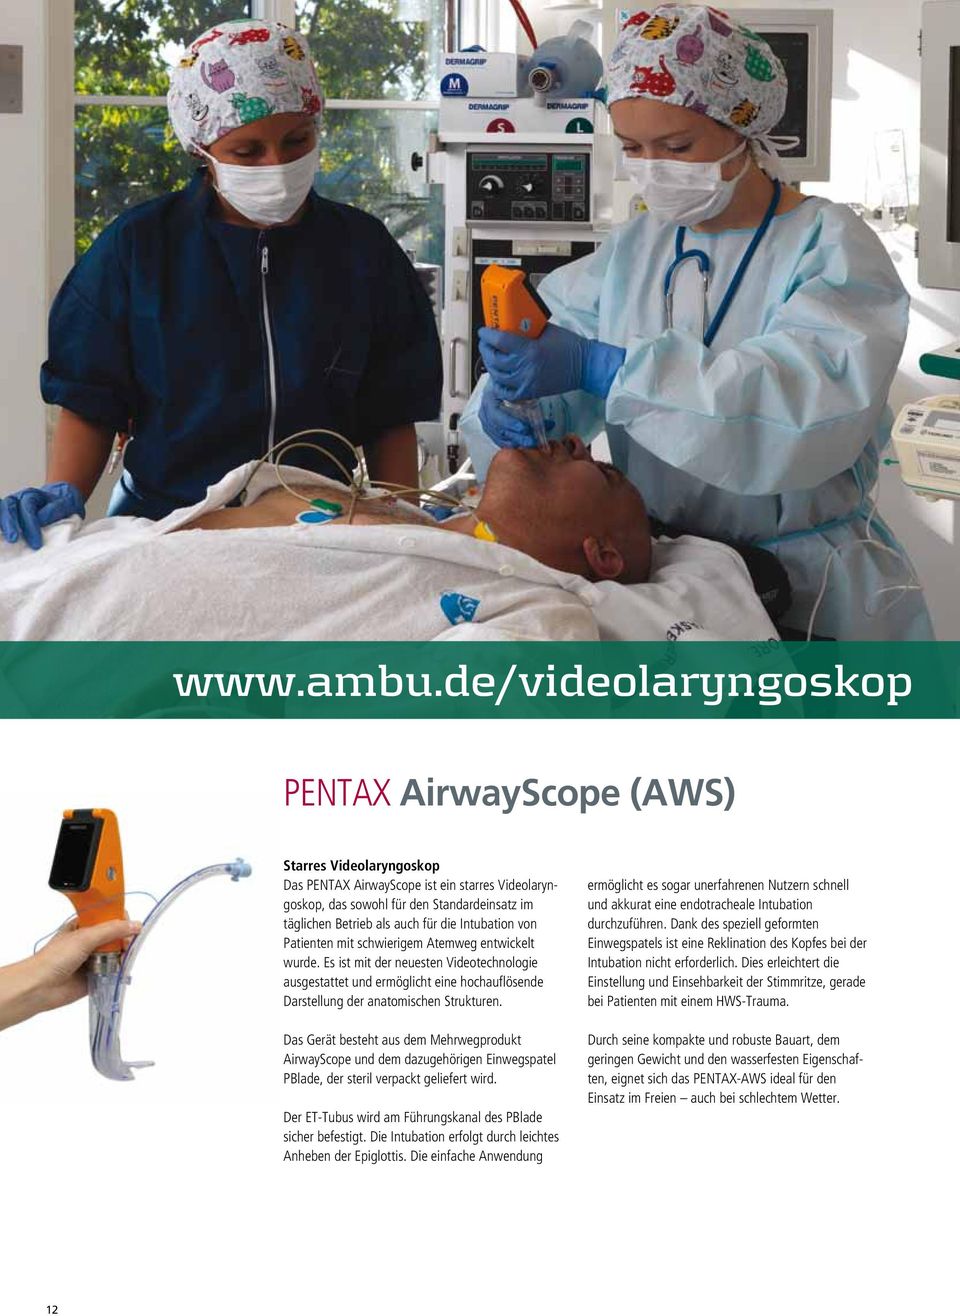 Intubation von Patienten mit schwierigem Atemweg entwickelt wurde. Es ist mit der neuesten Videotechnologie ausgestattet und ermöglicht eine hochauflösende Darstellung der anatomischen Strukturen.